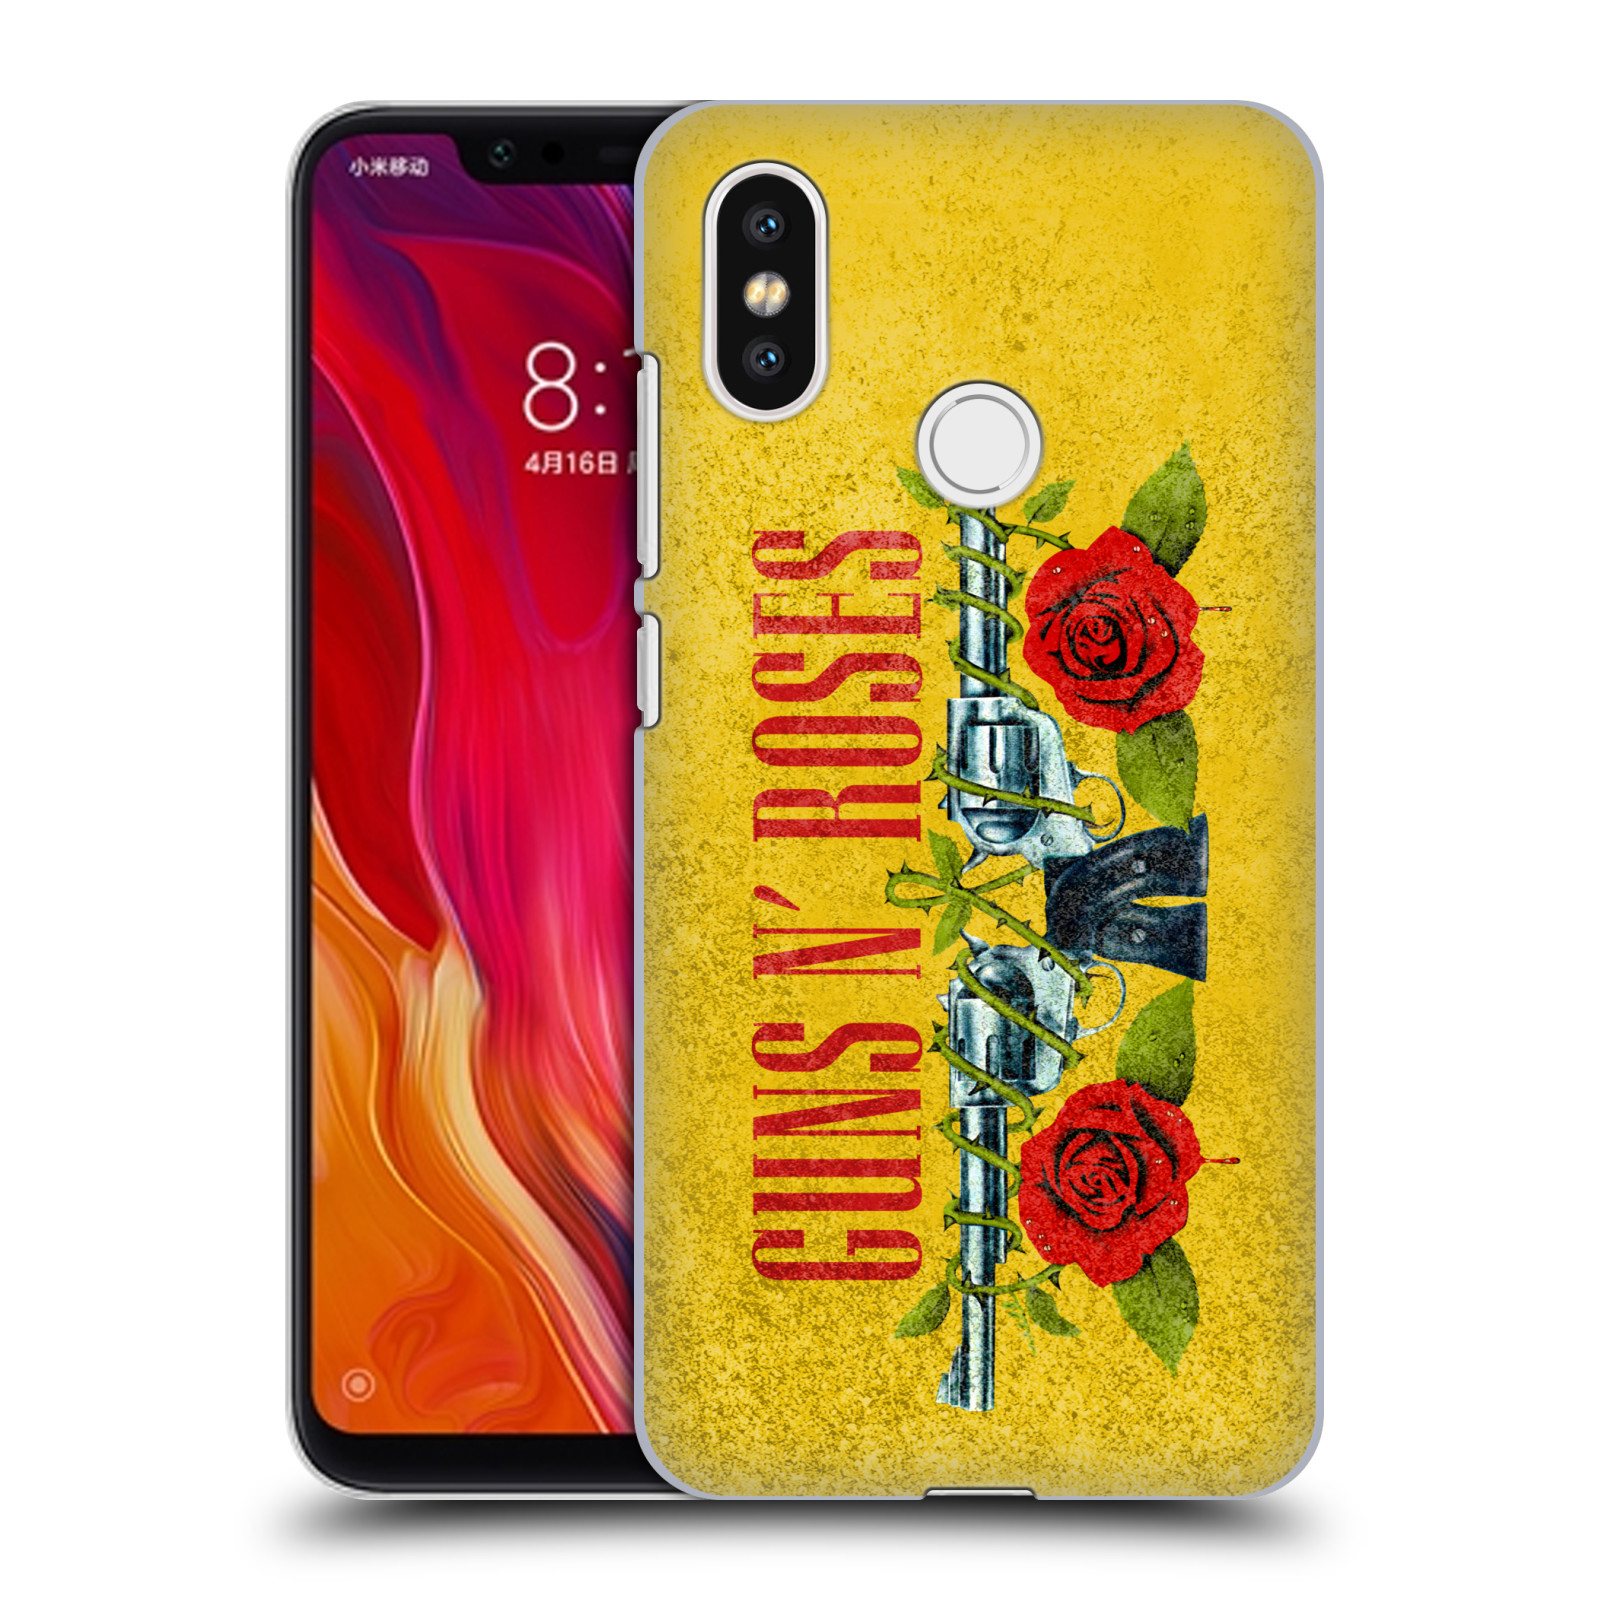 HEAD CASE plastový obal na mobil Xiaomi Mi 8 hudební skupina Guns N Roses pistole a růže žluté pozadí